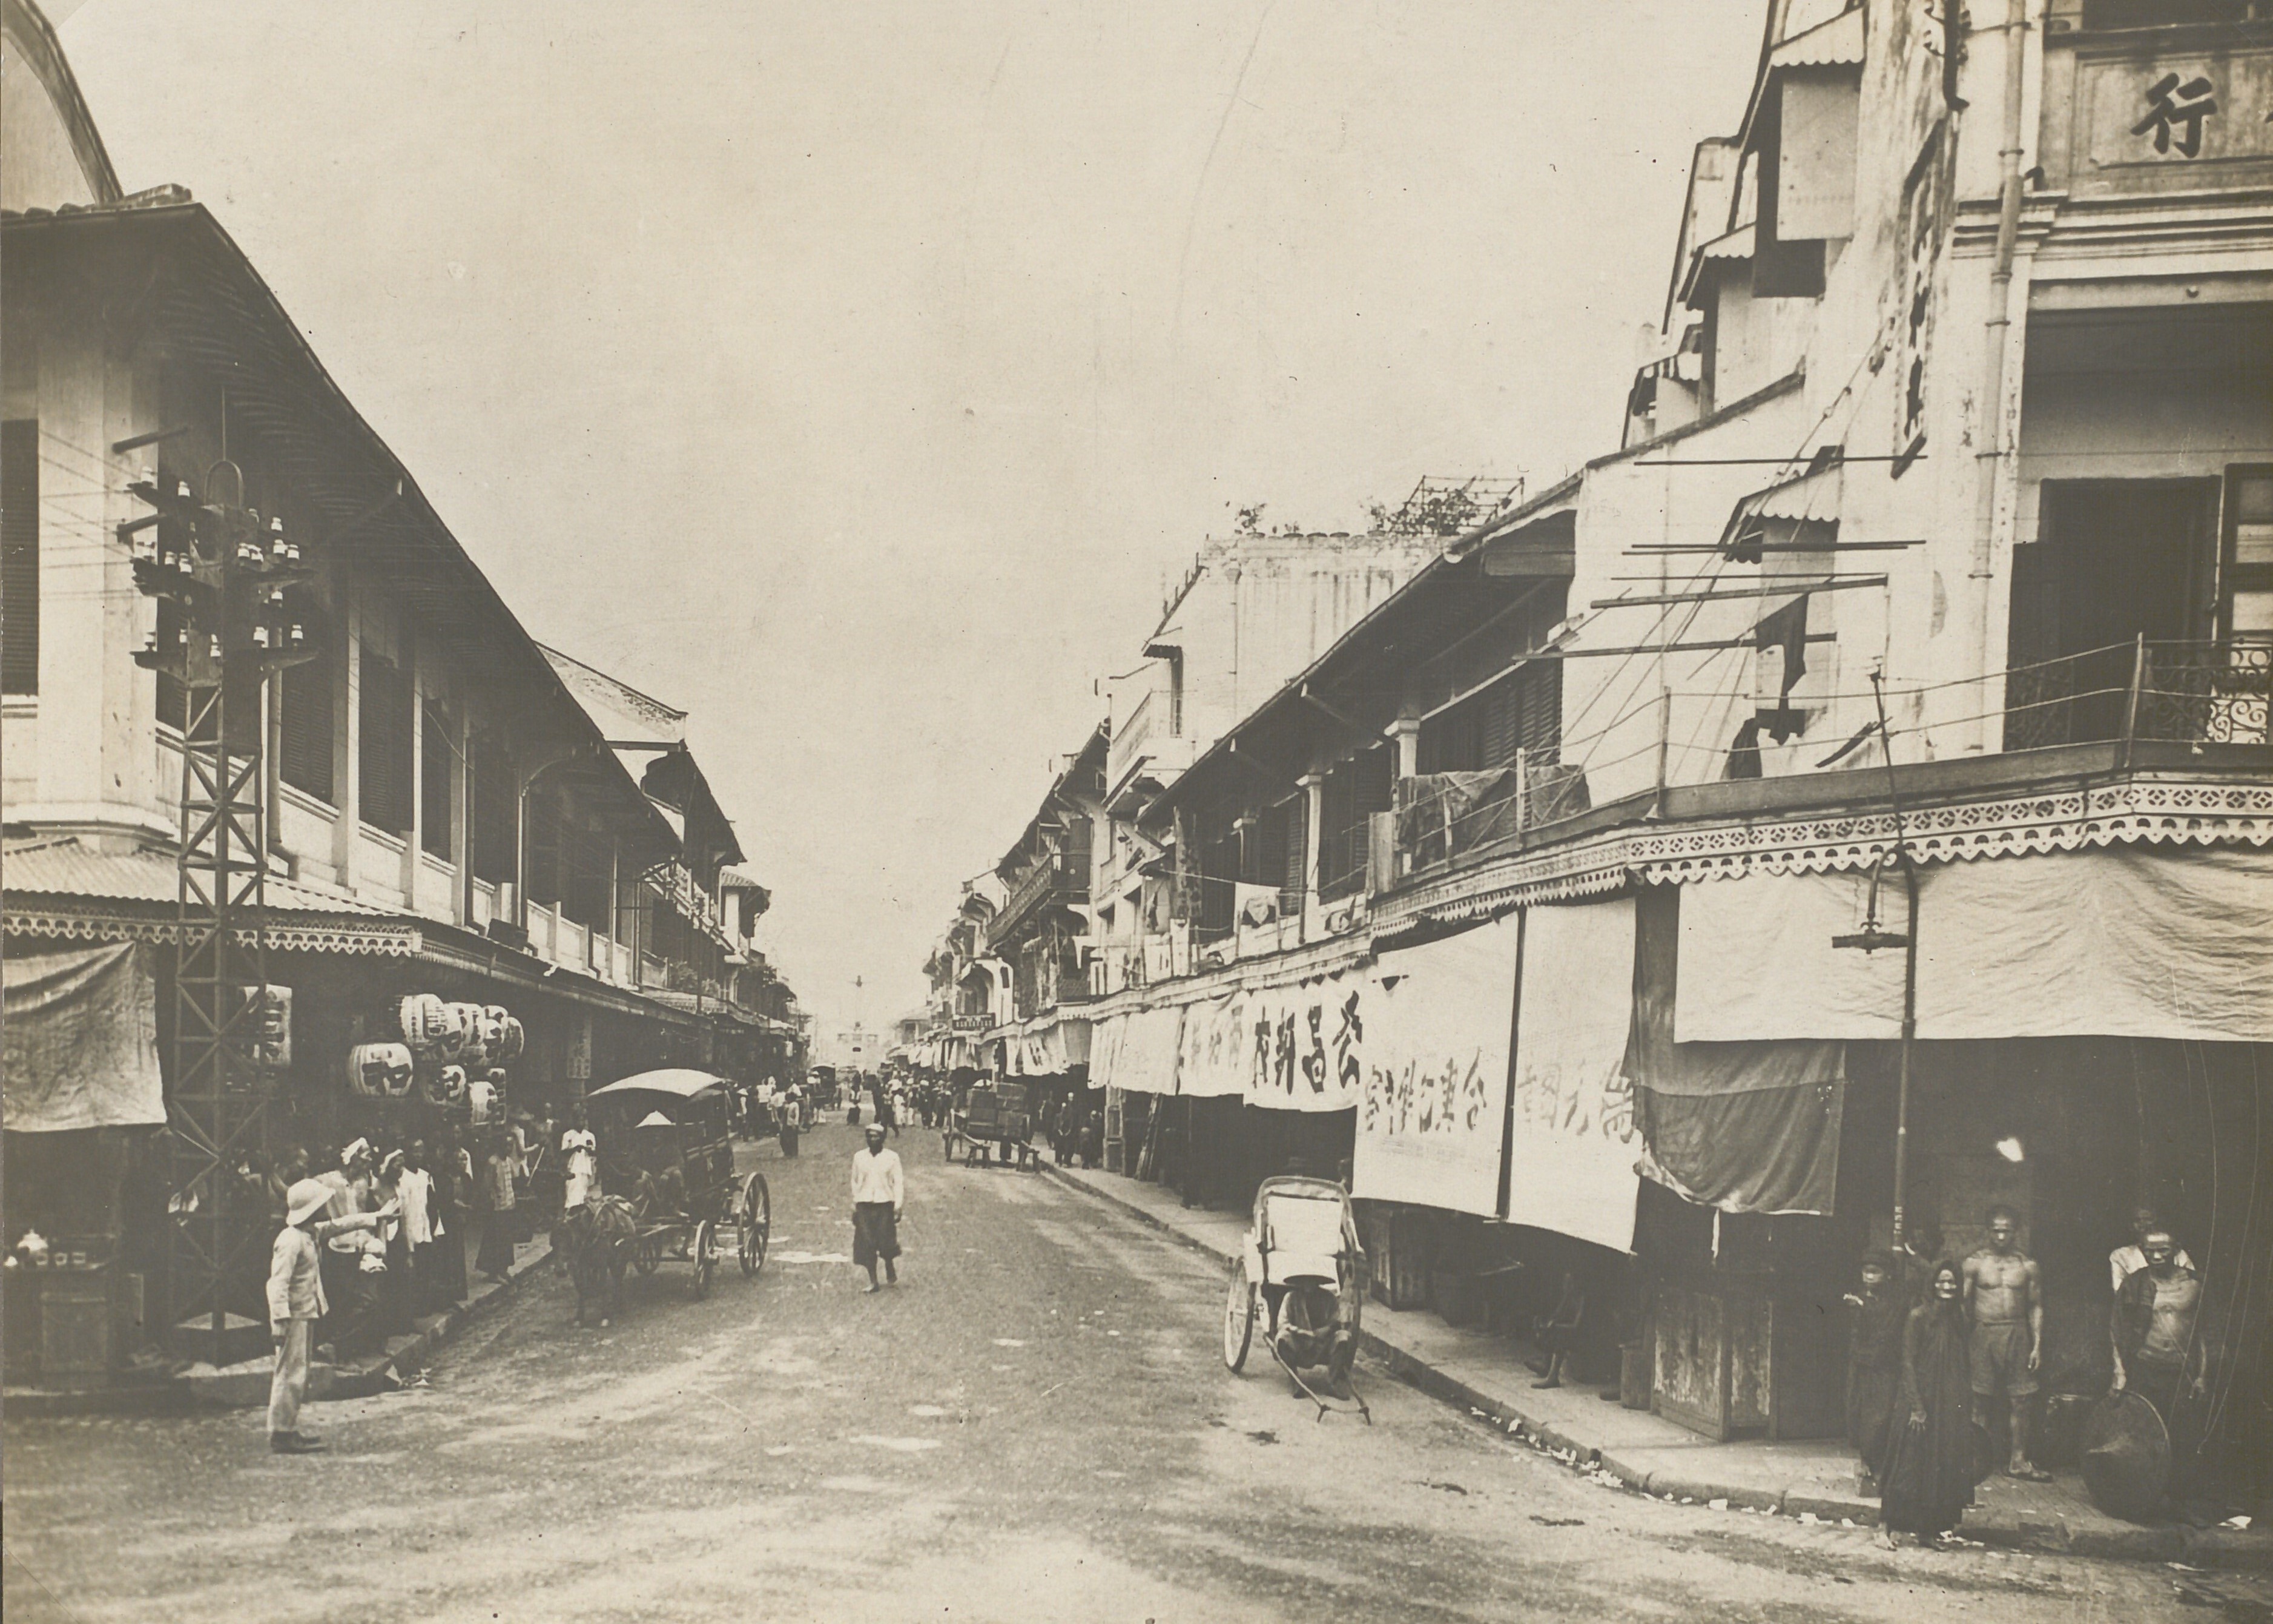 Cảnh sầm uất ở đô thị Chợ Lớn hơn 100 năm trước - ảnh 2